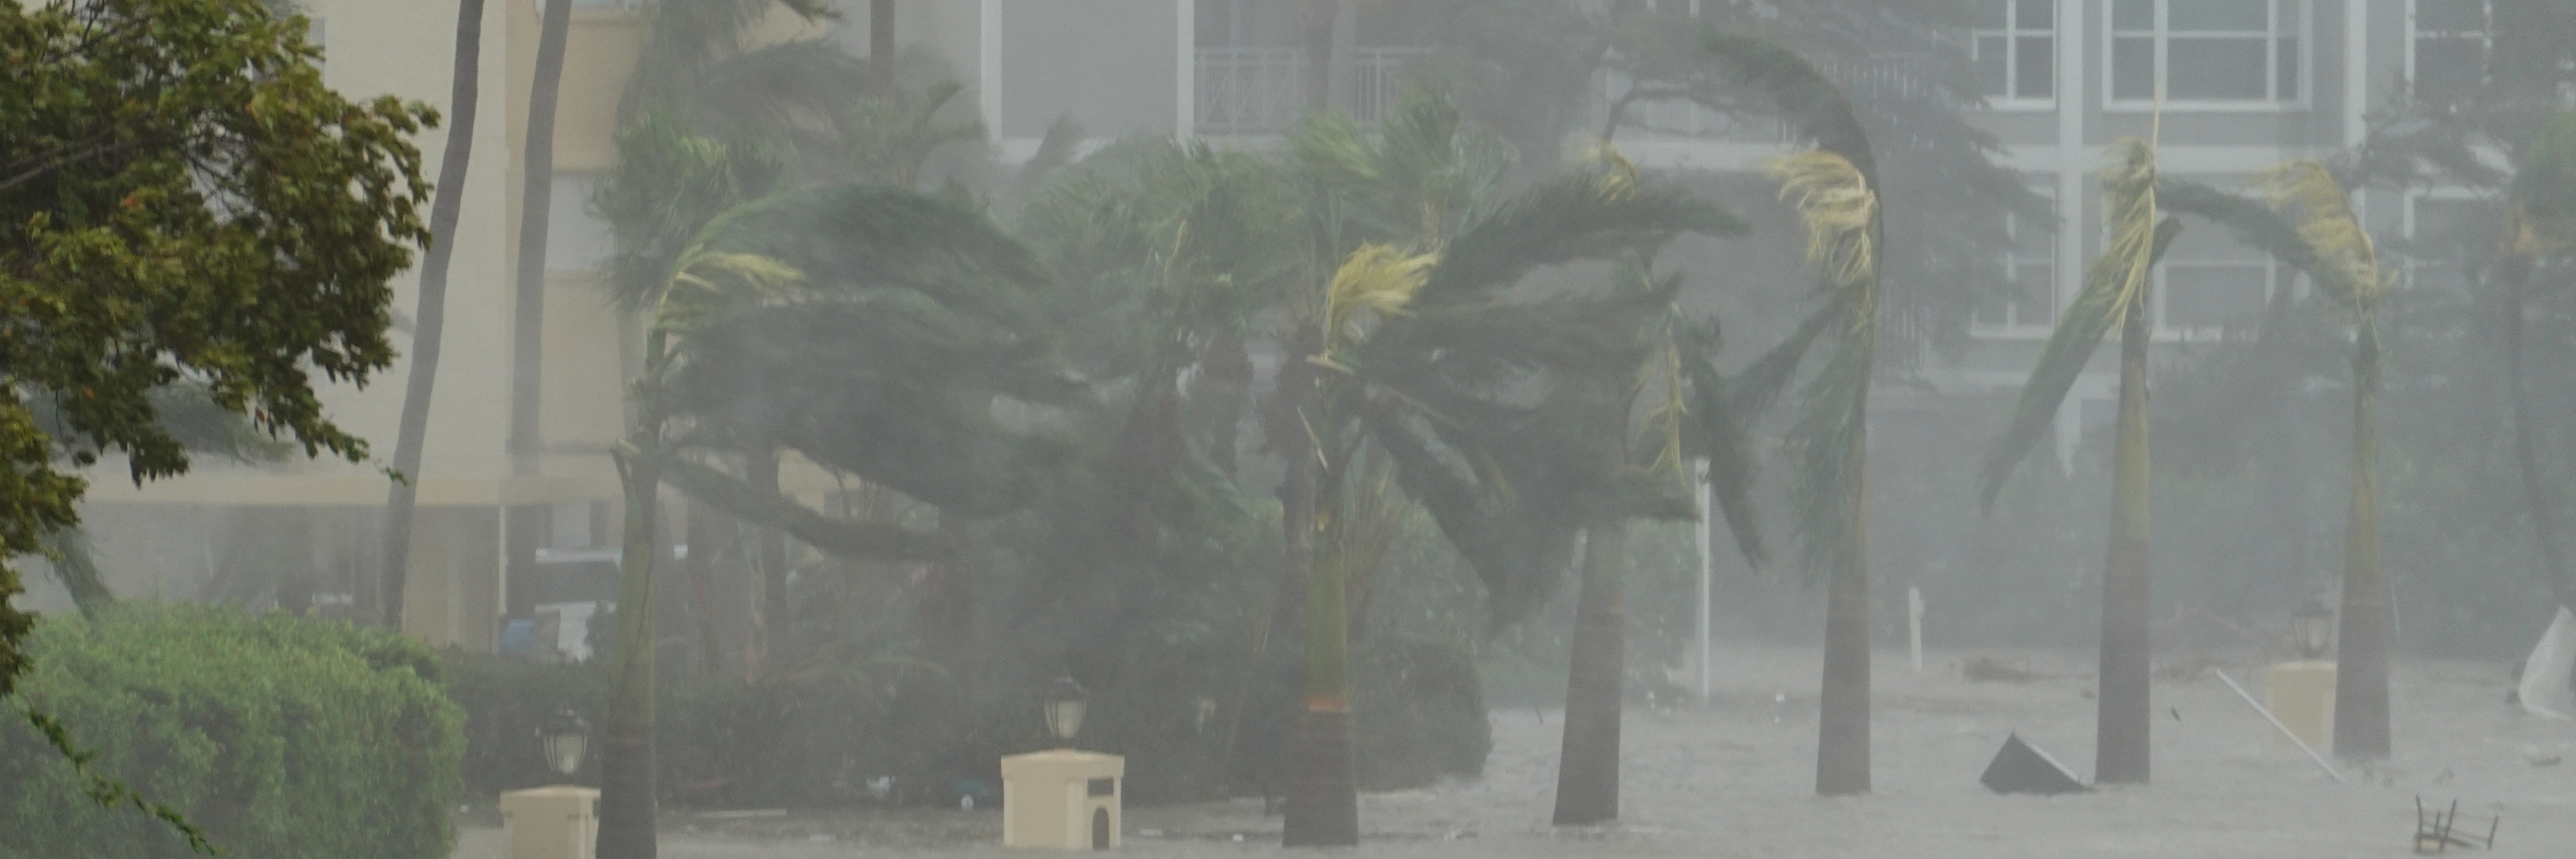 Hurrikan-Saison 2022: Weniger Stürme als erwartet, aber extreme Schäden